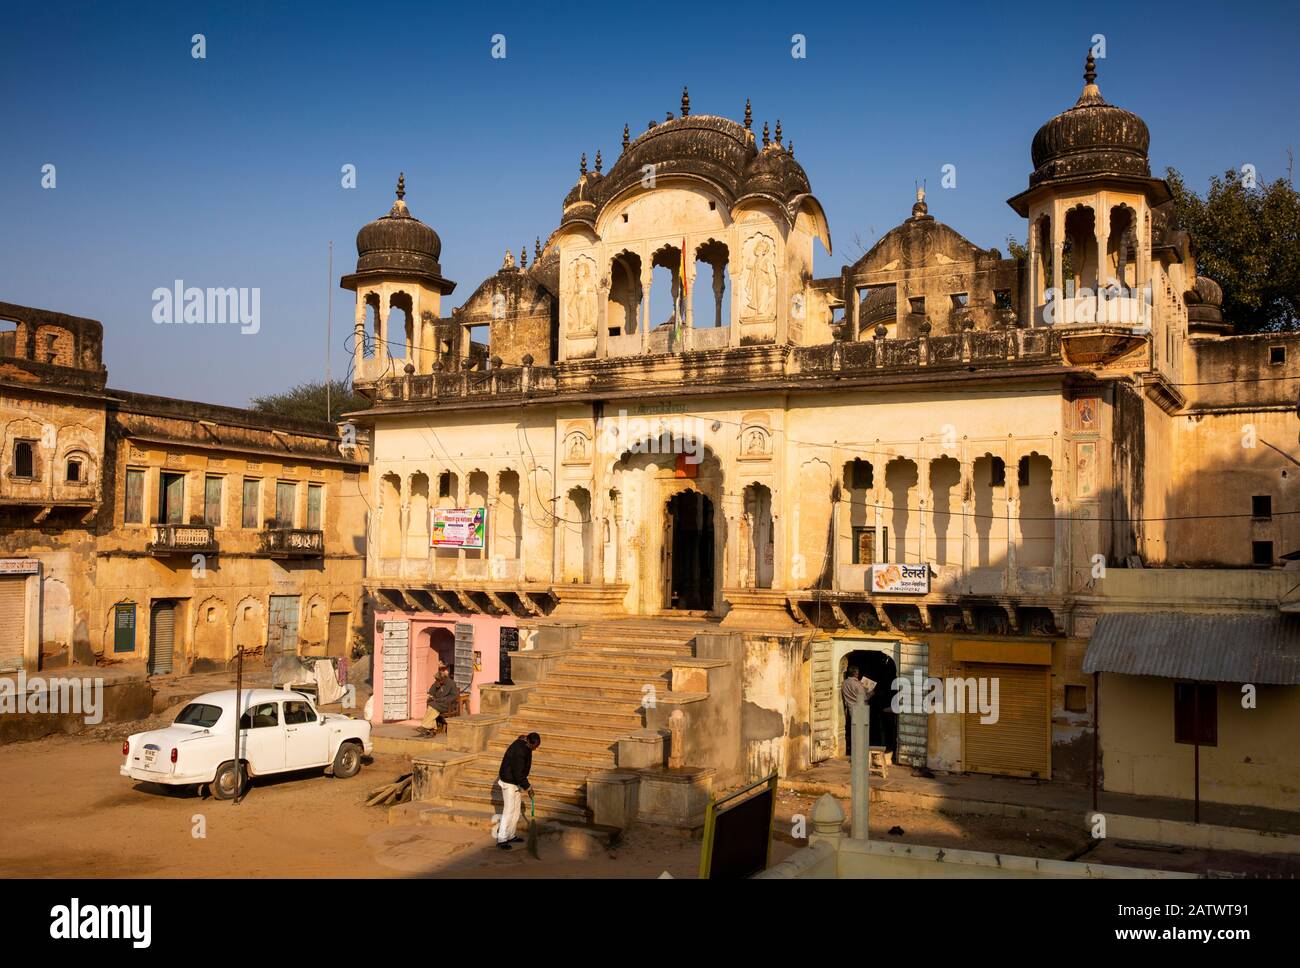 India, Rajasthan, Shekhawati, Dundlod, Hindustan Ambassador car parked outside old Haveli Stock Photo